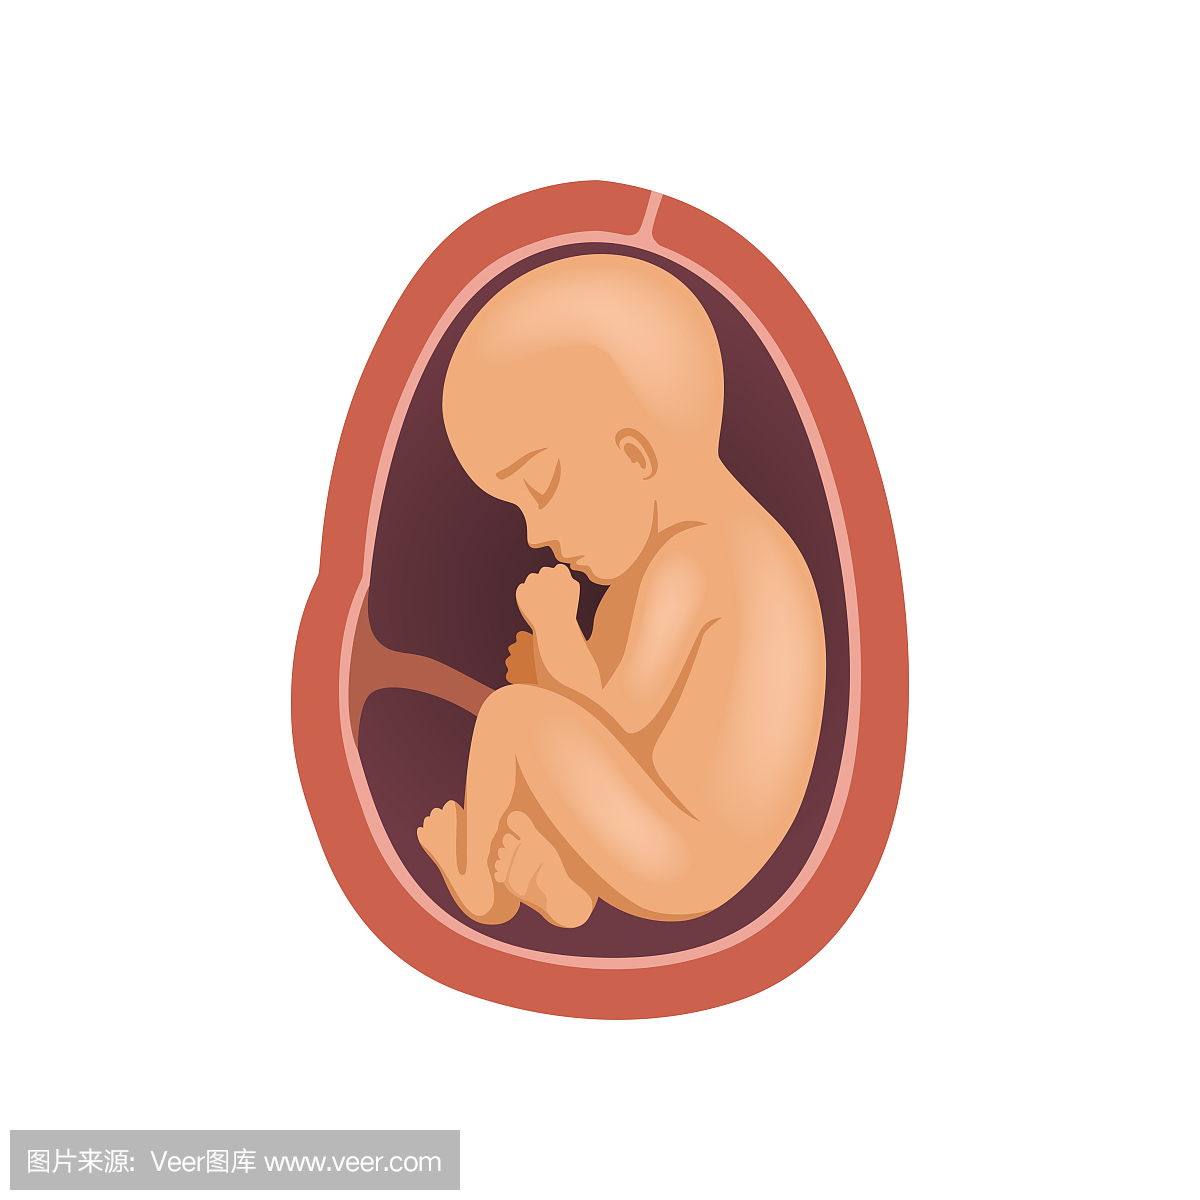 胎儿在子宫内,9个月,胚胎发育阶段矢量图在白